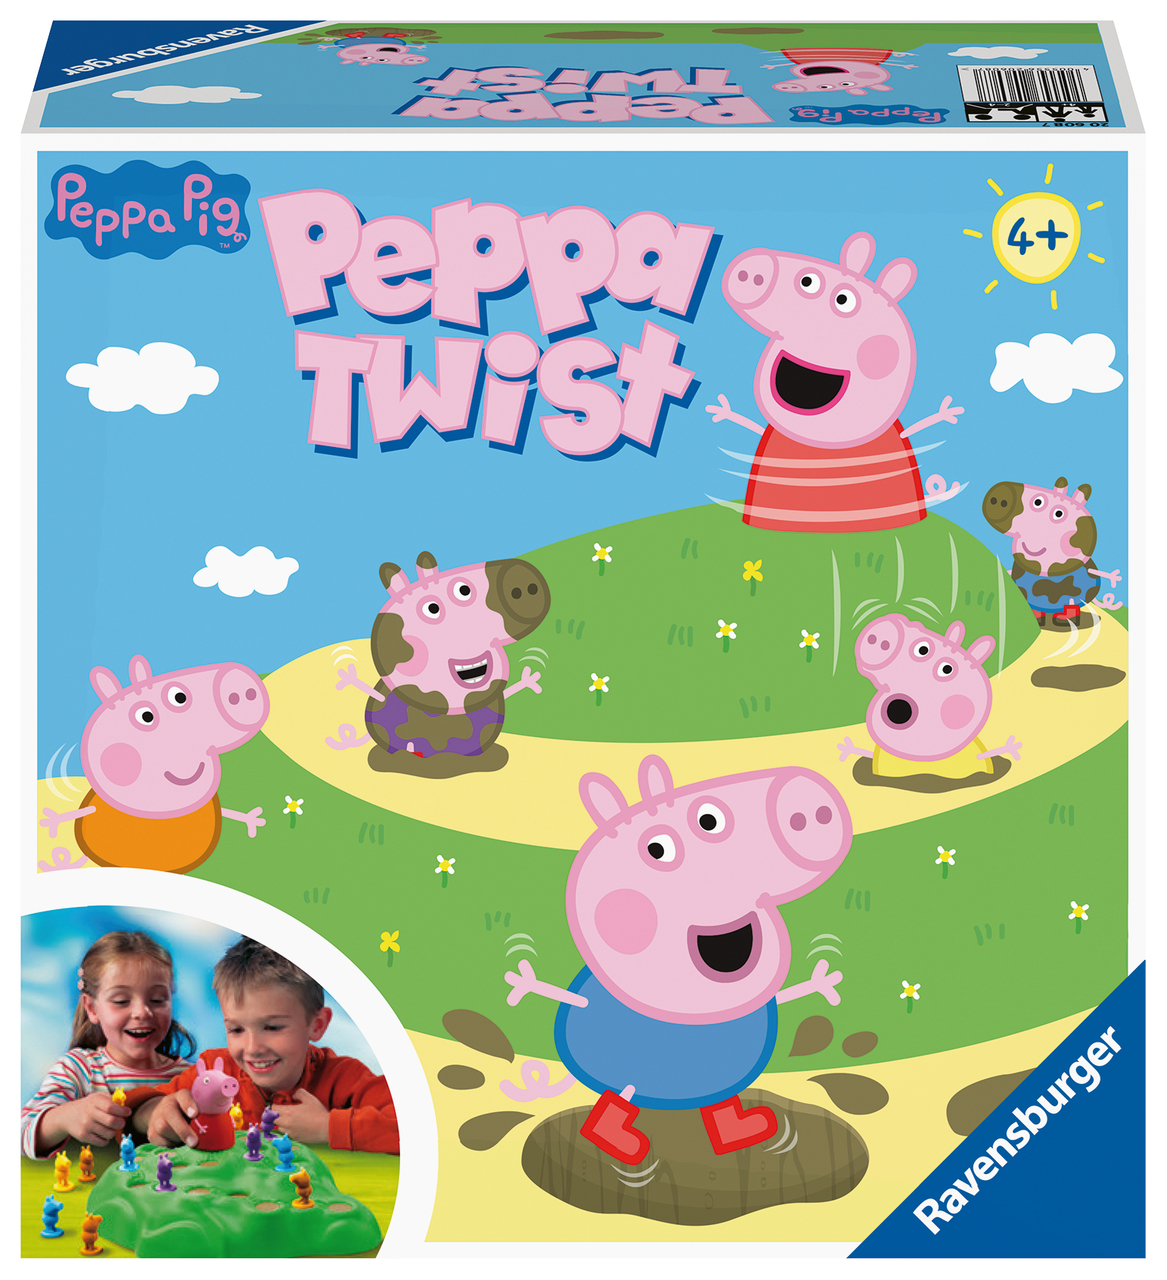 Ravensburger 20608 - Peppa Pig Lotti Spiele-Klassiker aus Schwäbischer Pig, ab 4 bis Serienhelden Jahren Kinder mit den für 2 Karotti, | Peppa Albverein 4